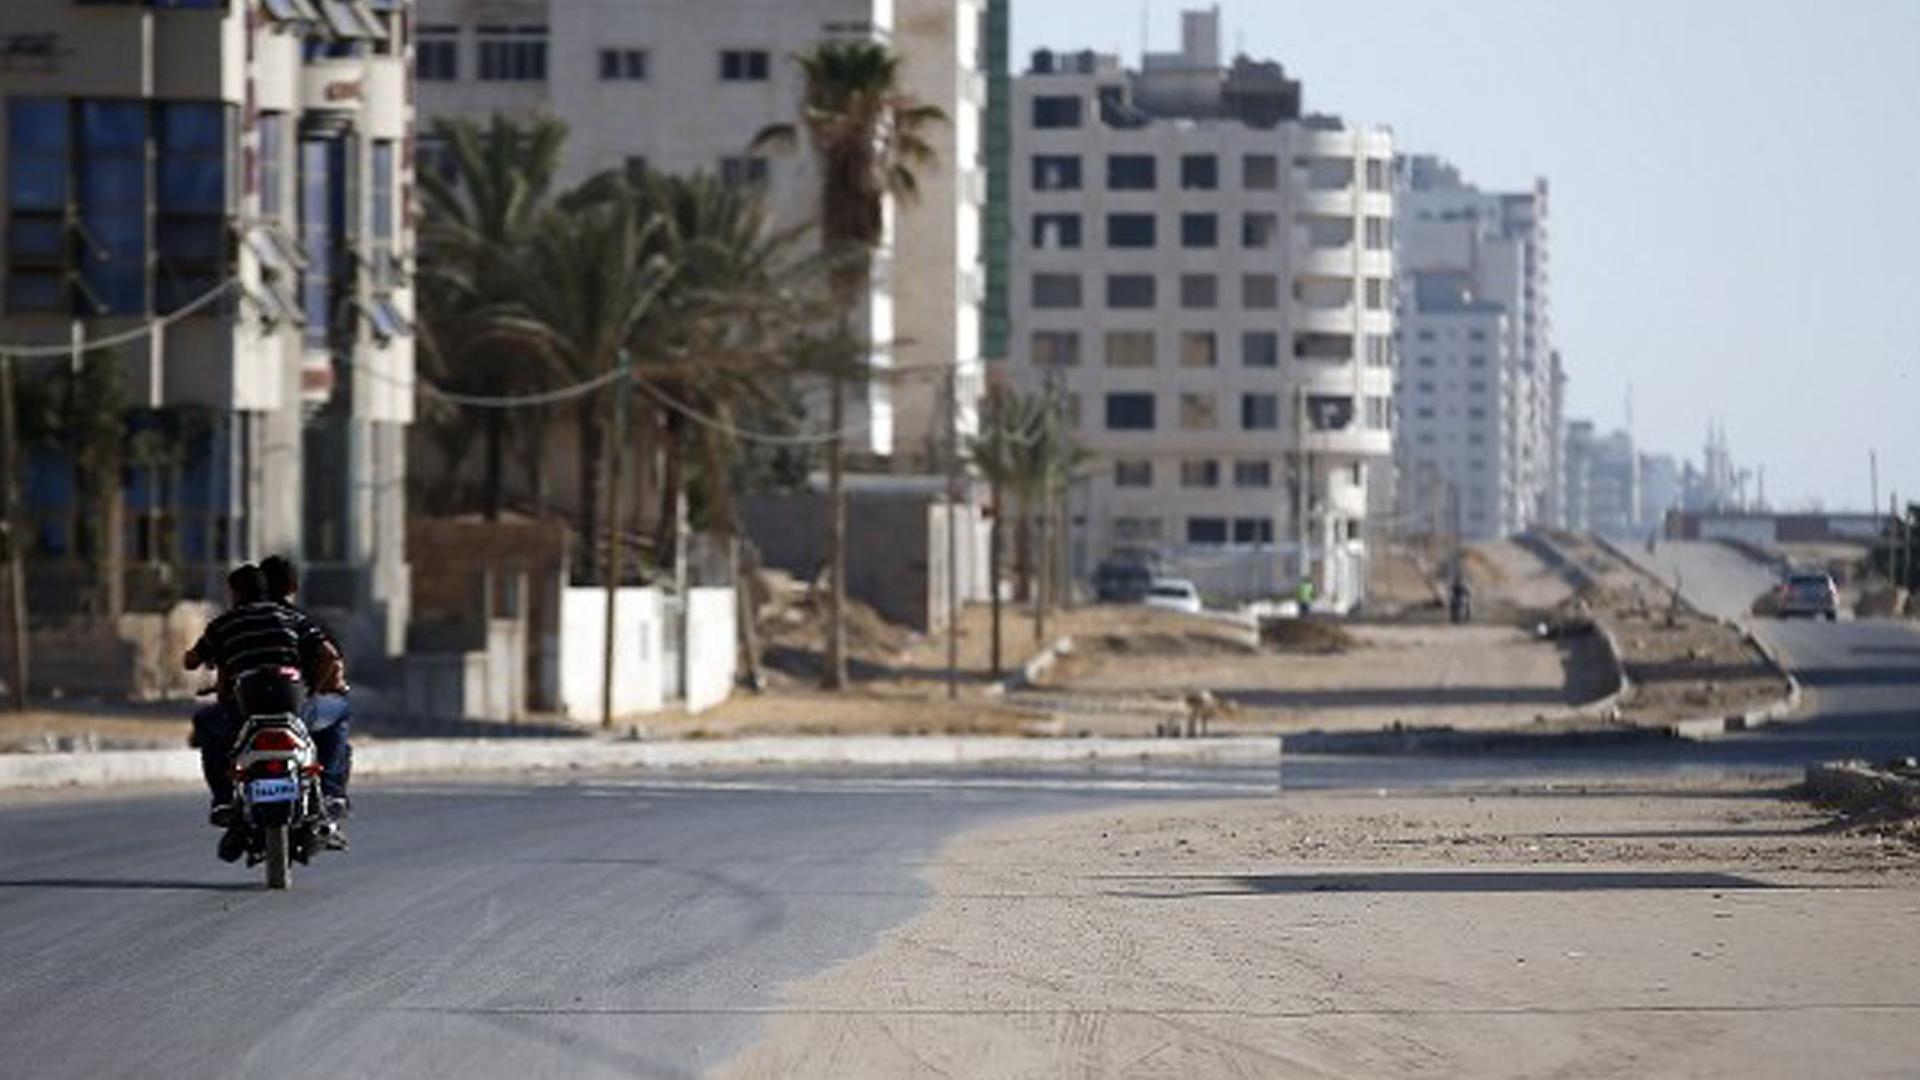 Palästinenser fahren mit einem Motorrad entlang einer ausgestorbenen Straße im Gaza-Streifen.